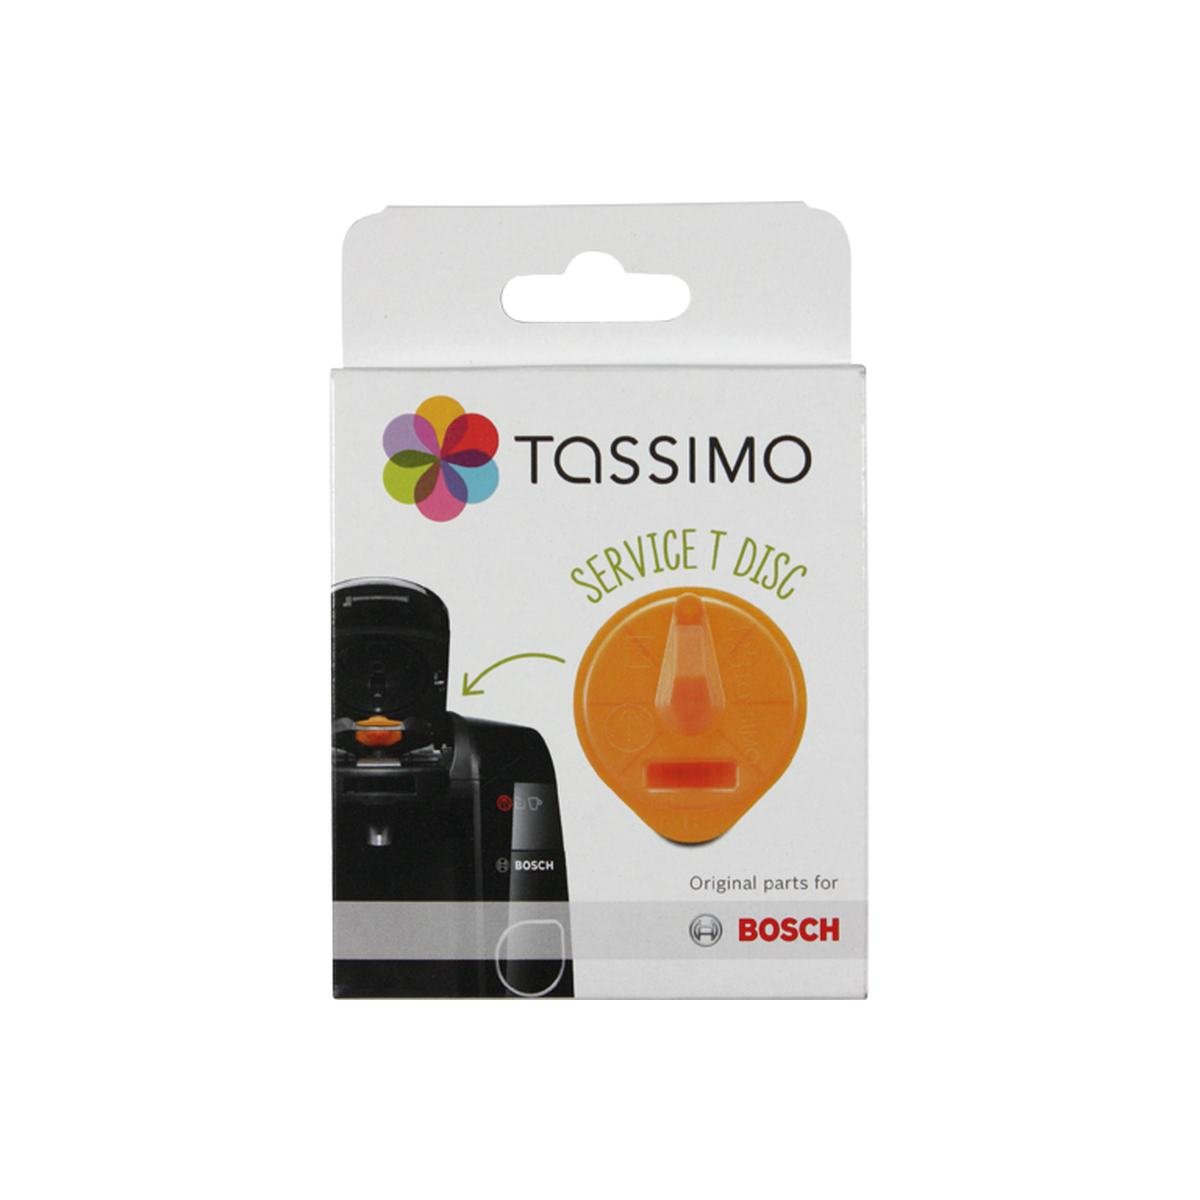 Service Tdisc orange till Tassimo kaffemaskine